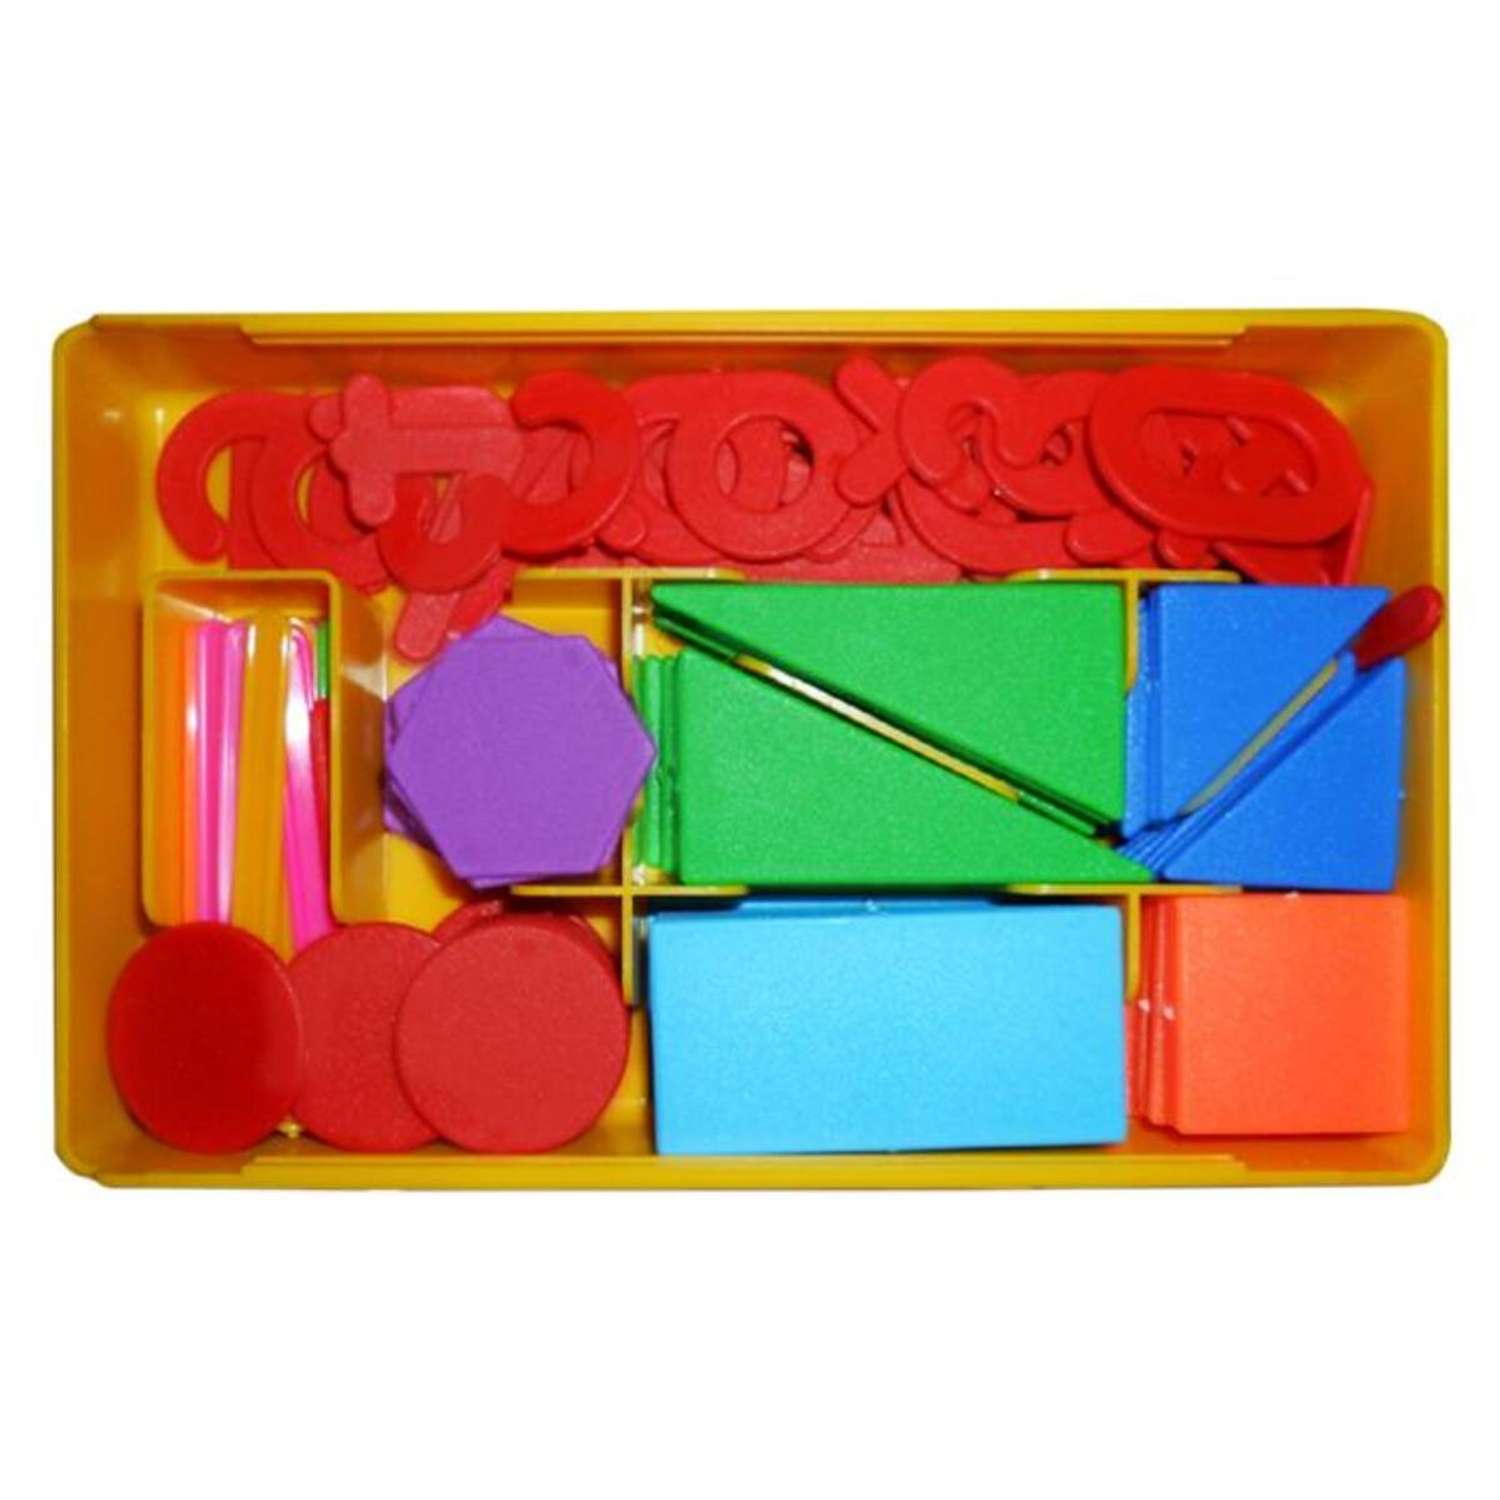 Счетный материал Darvish геометрические фигуры разной формы счетные палочки знаки пособие для школы и детского сада - фото 1